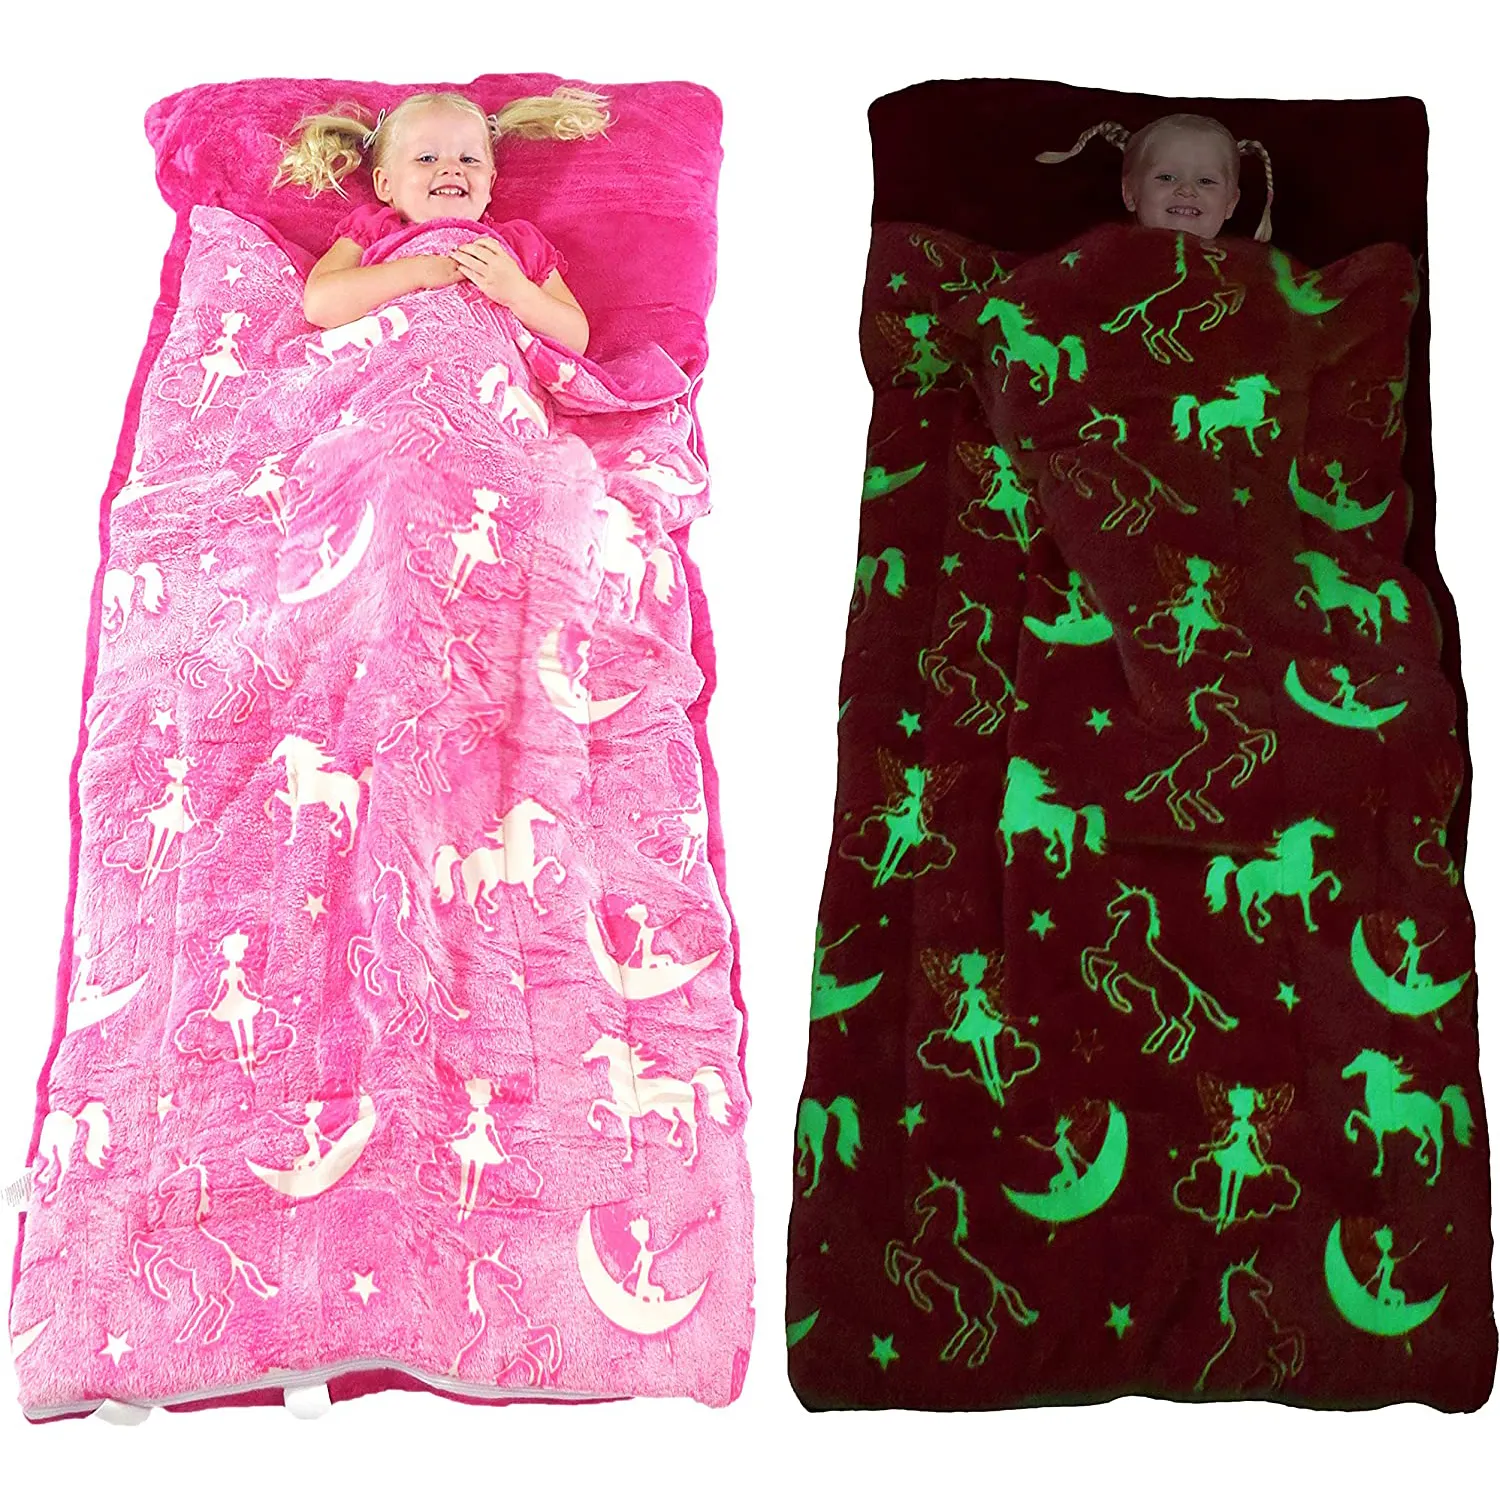 Kinder schlafsack Glow in The Dark Schlafsack für Mädchen und Jungen Große weiche, haltbare, warme Plüschs chlaf säcke mit Kissen